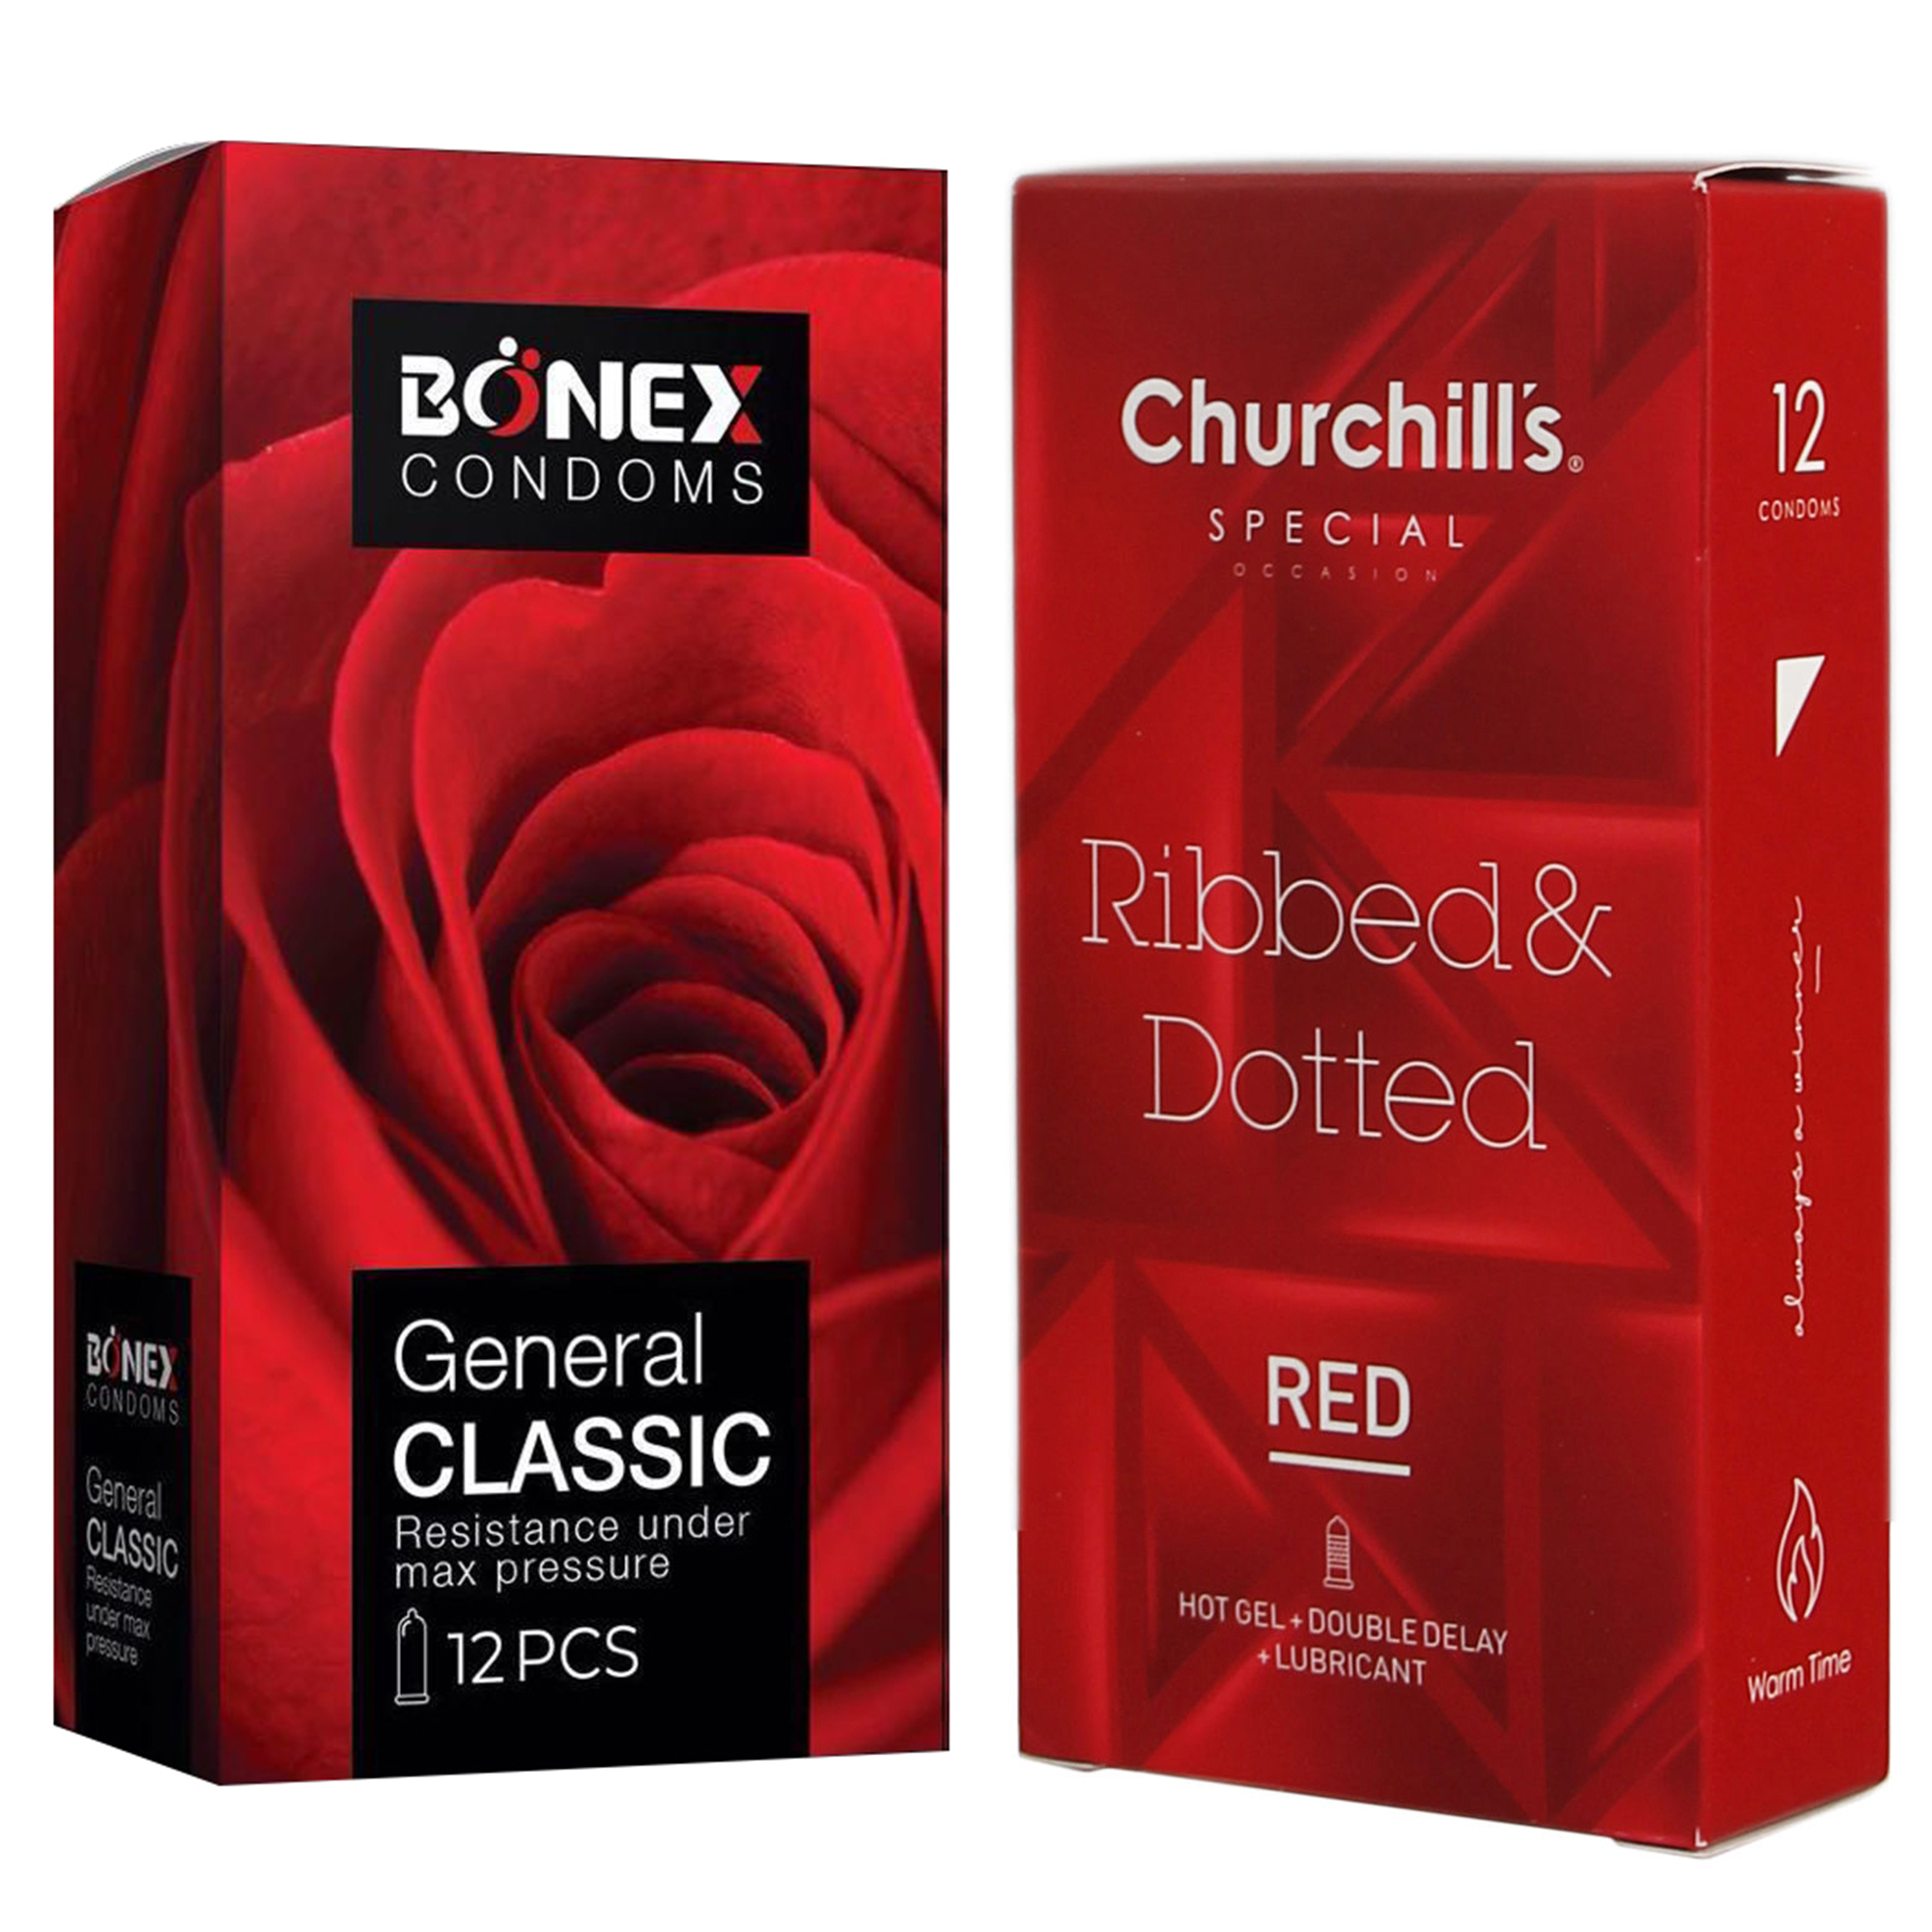 کاندوم چرچیلز مدل Ribbed & Dotted Red بسته 12 عددی به همراه کاندوم بونکس مدل General Classic بسته 12 عددی 